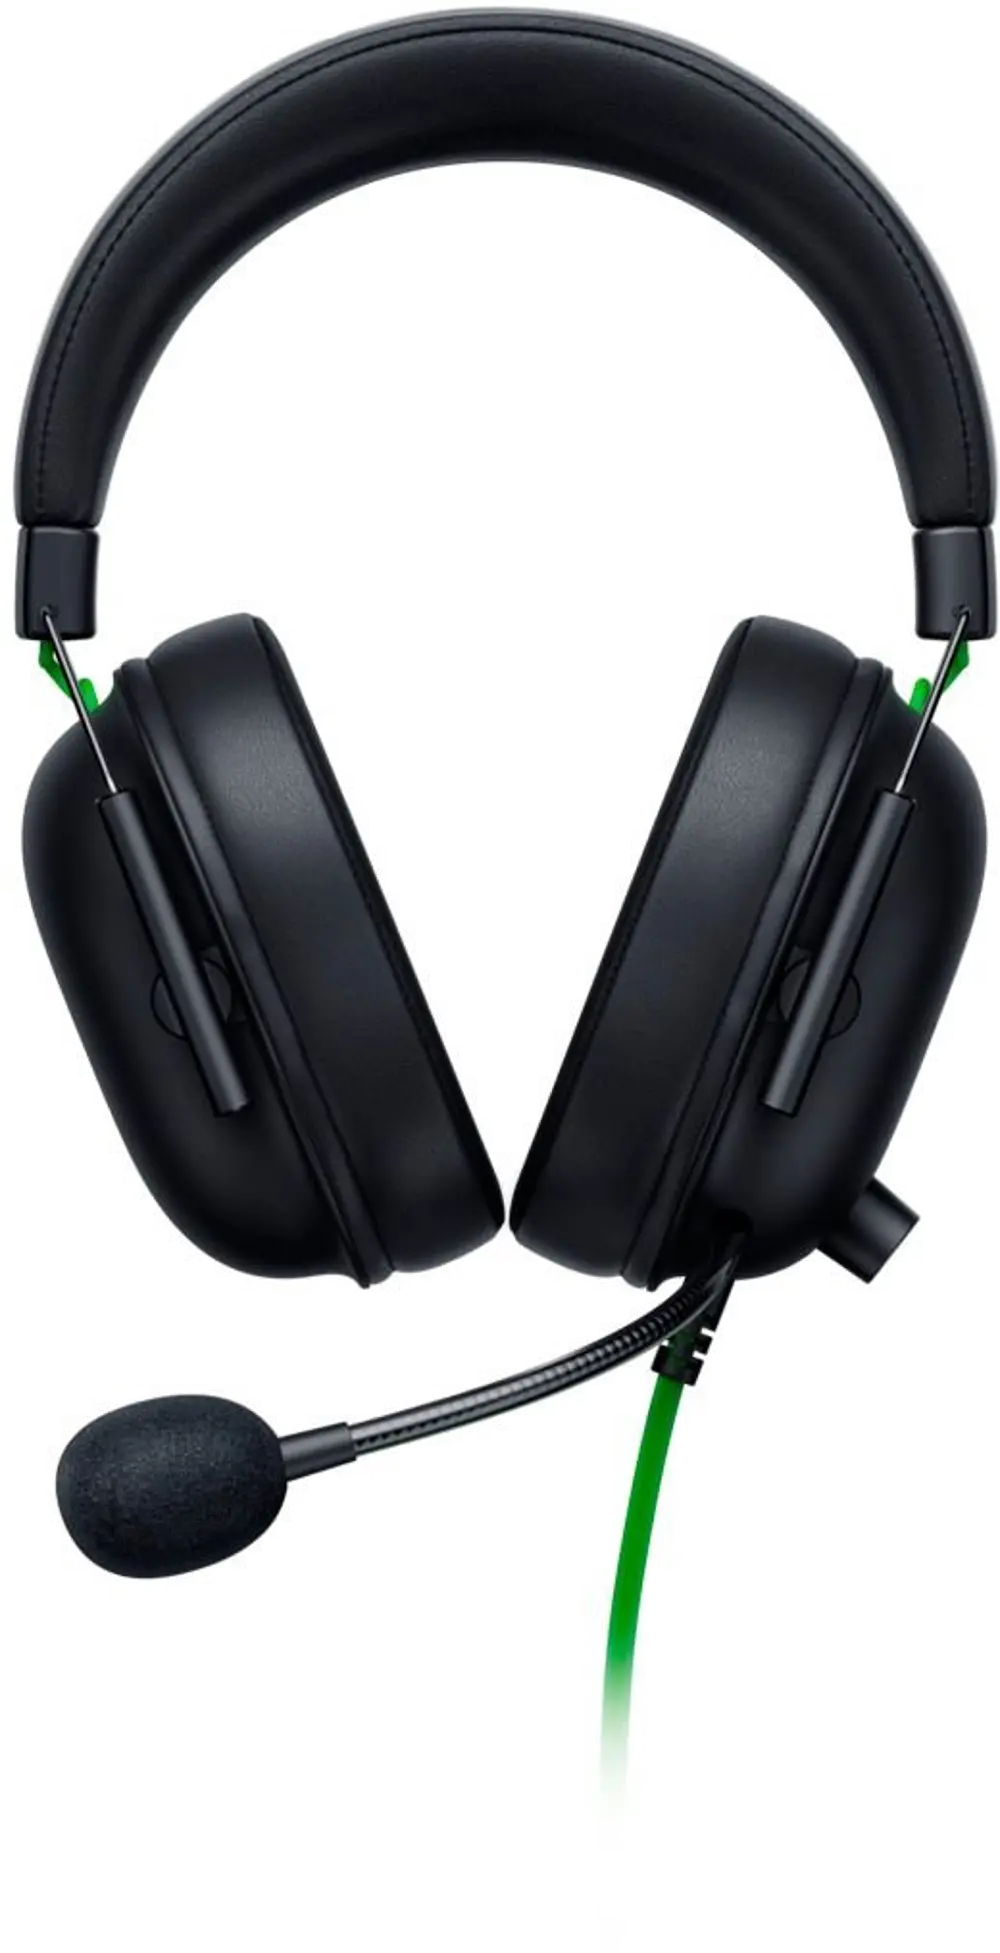 RAZER BLACKHSHARK V2 X HEADSET Razer BlackShark V2 X Wired Gaming Headset-1